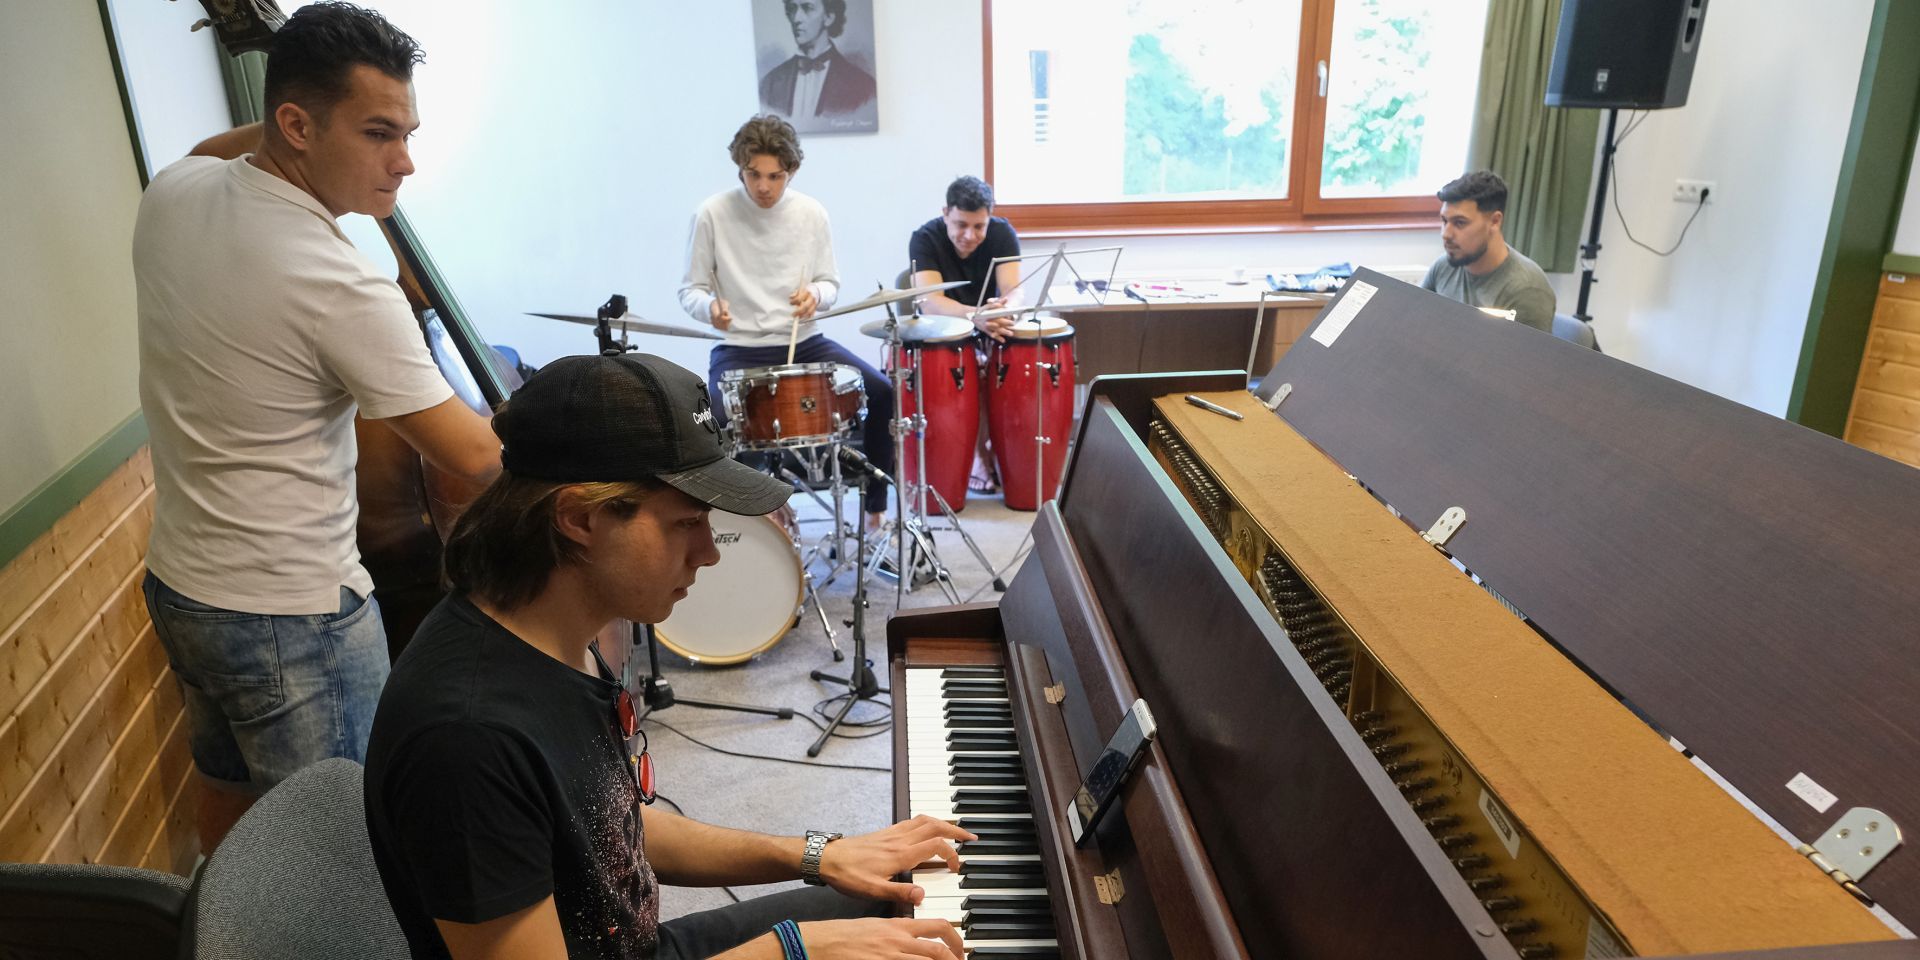 10 év alatt 300 tehetséges fiatal zenésznek segített a Snétberger program